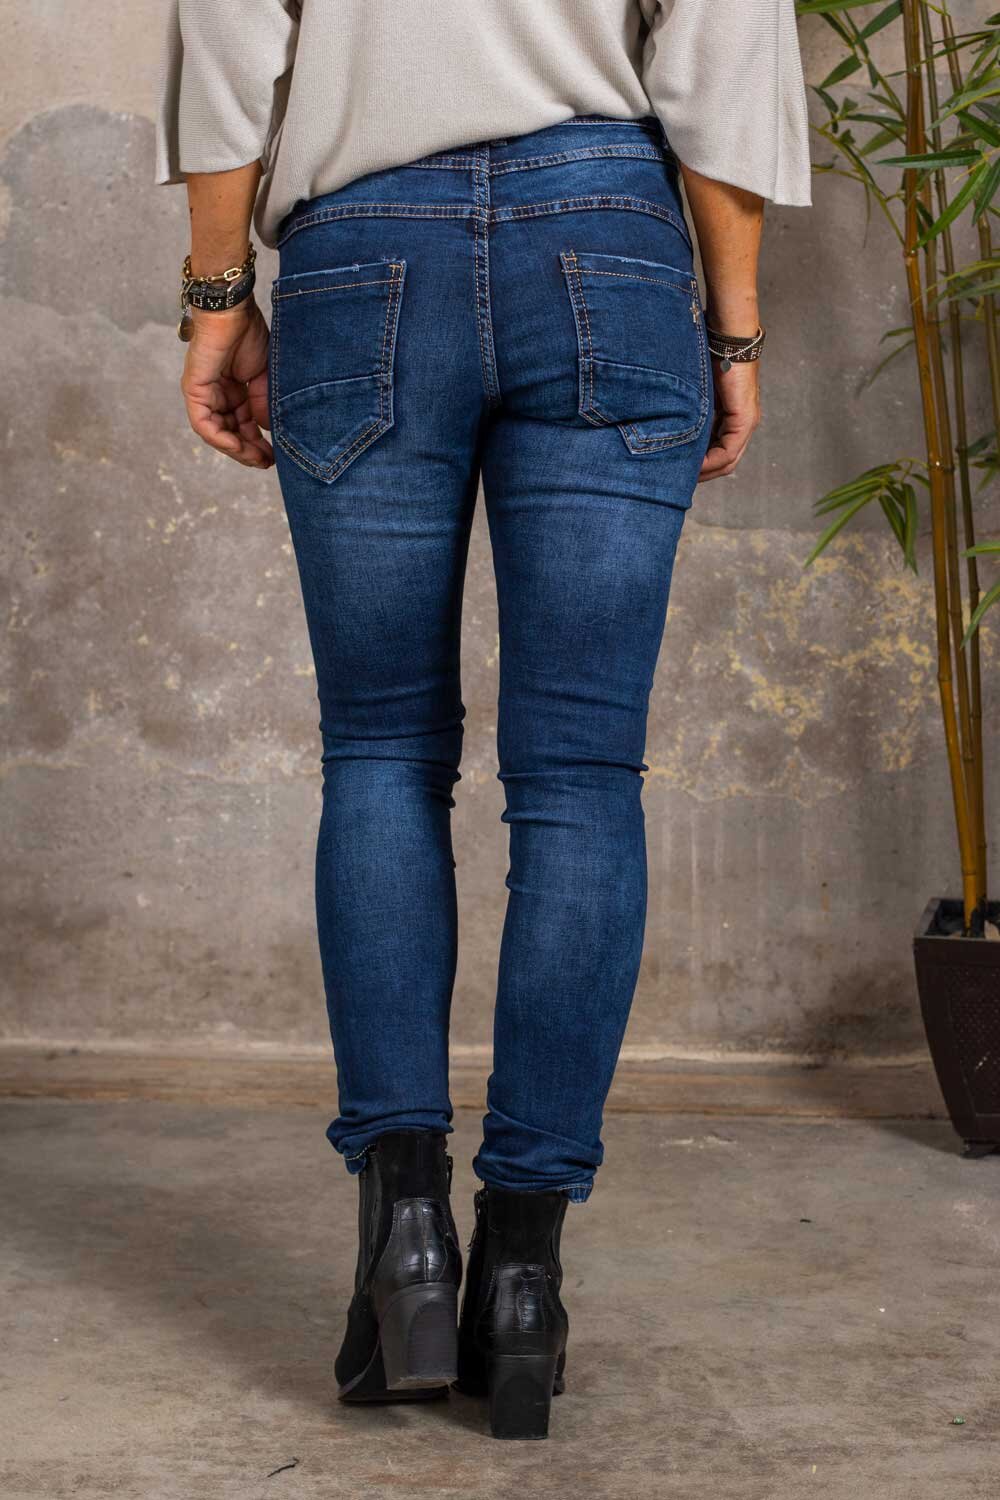 Jeans JW1025A - Denim